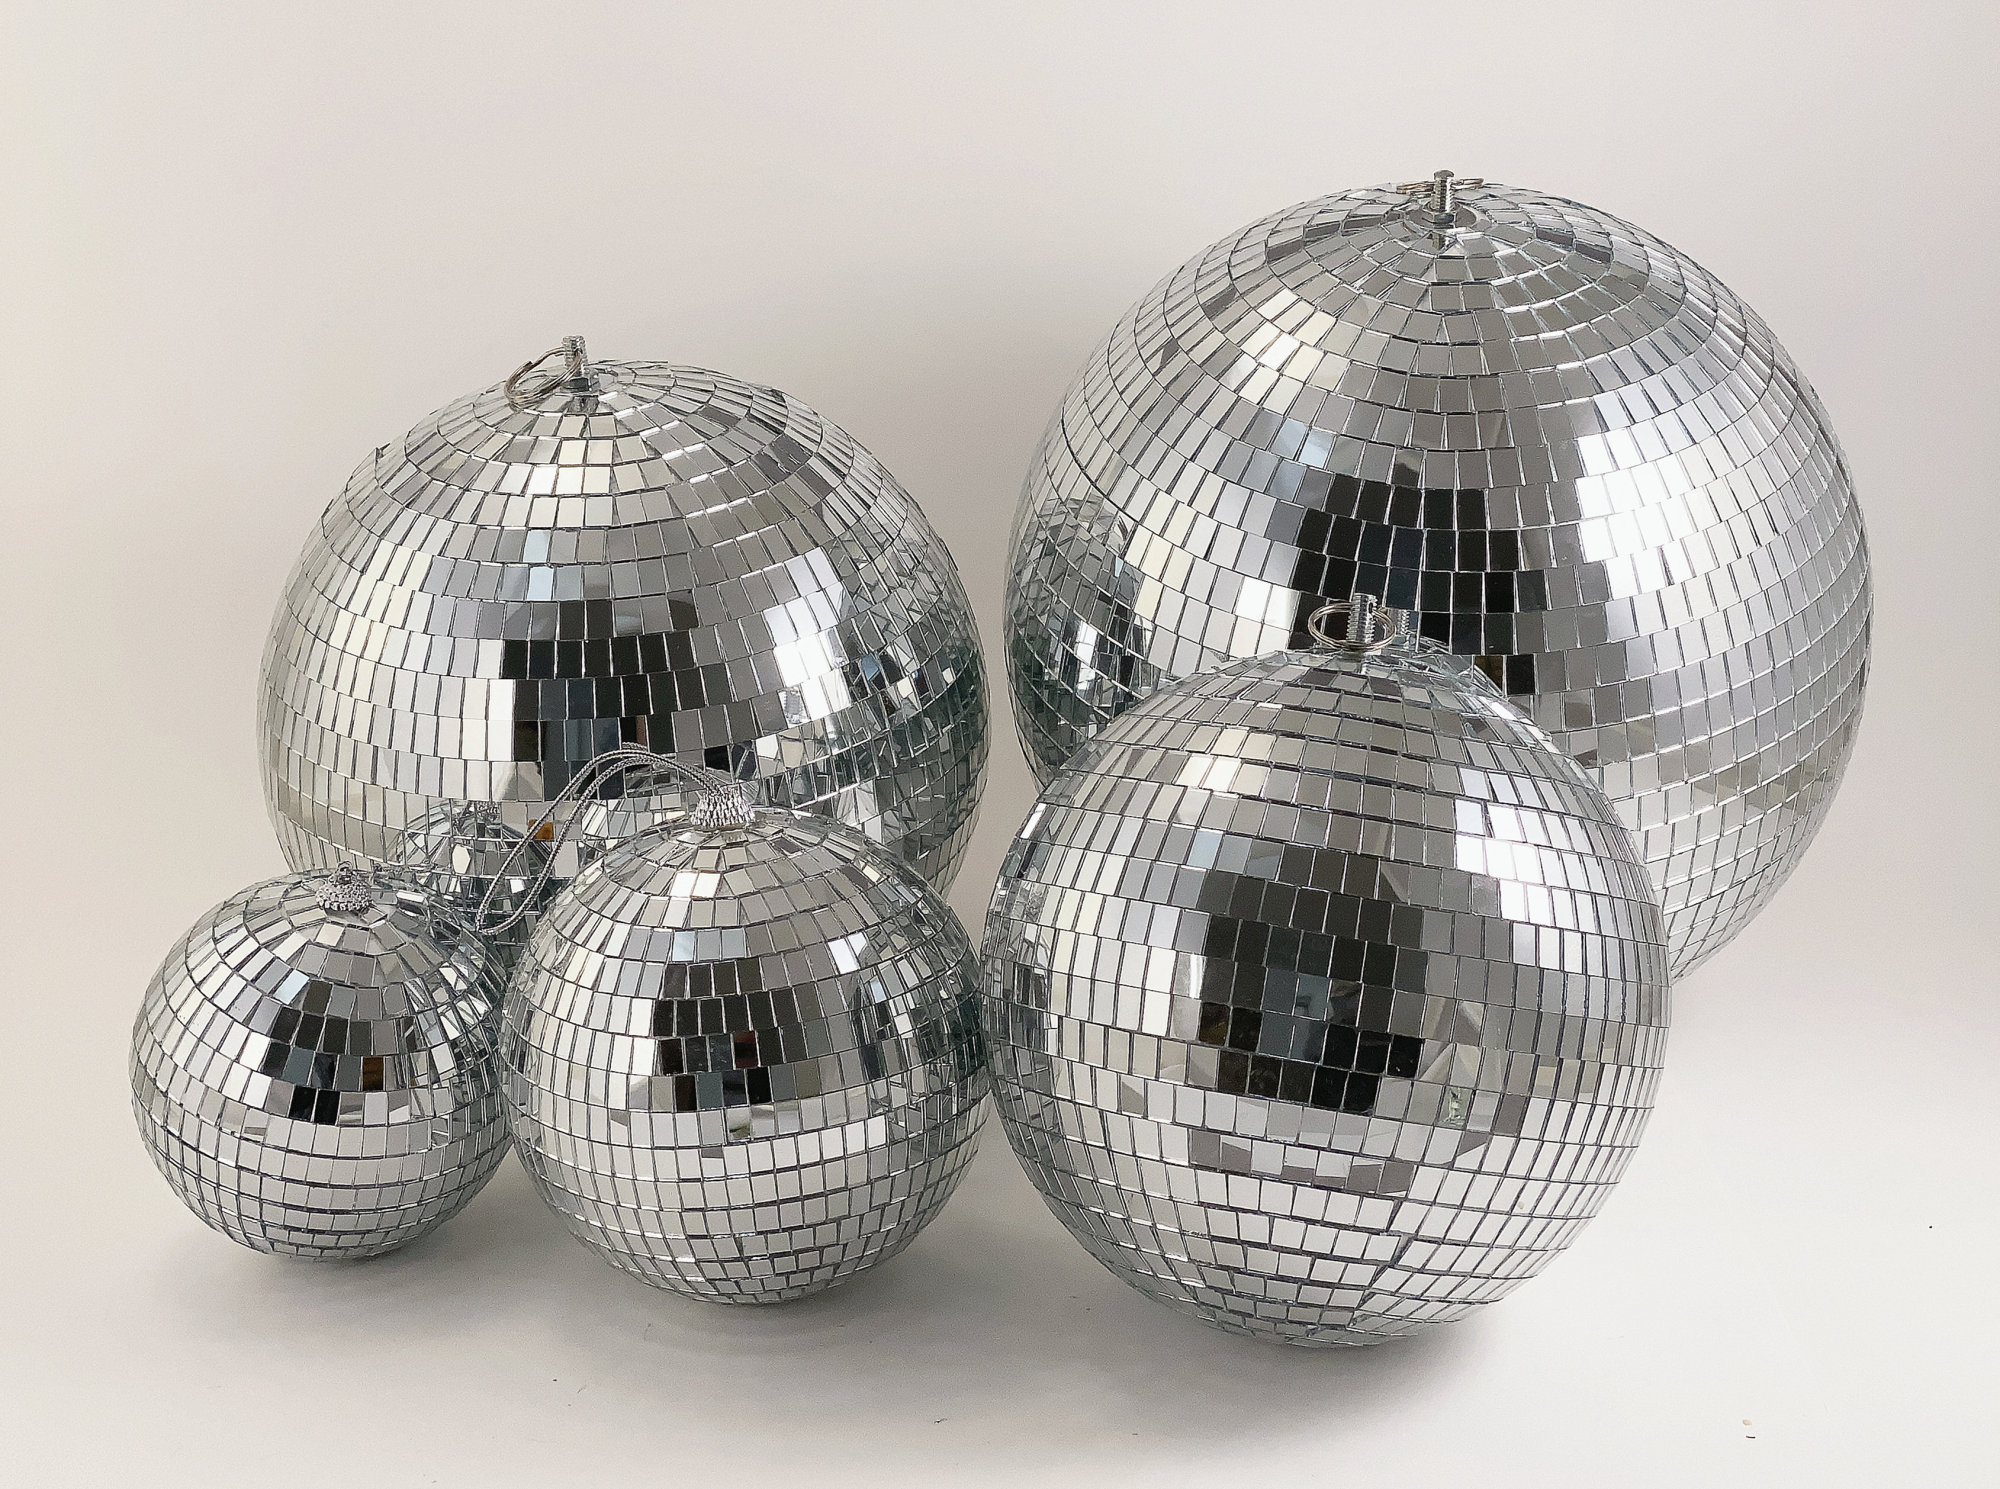 Mini Gold & Silver Disco Balls, 6ct